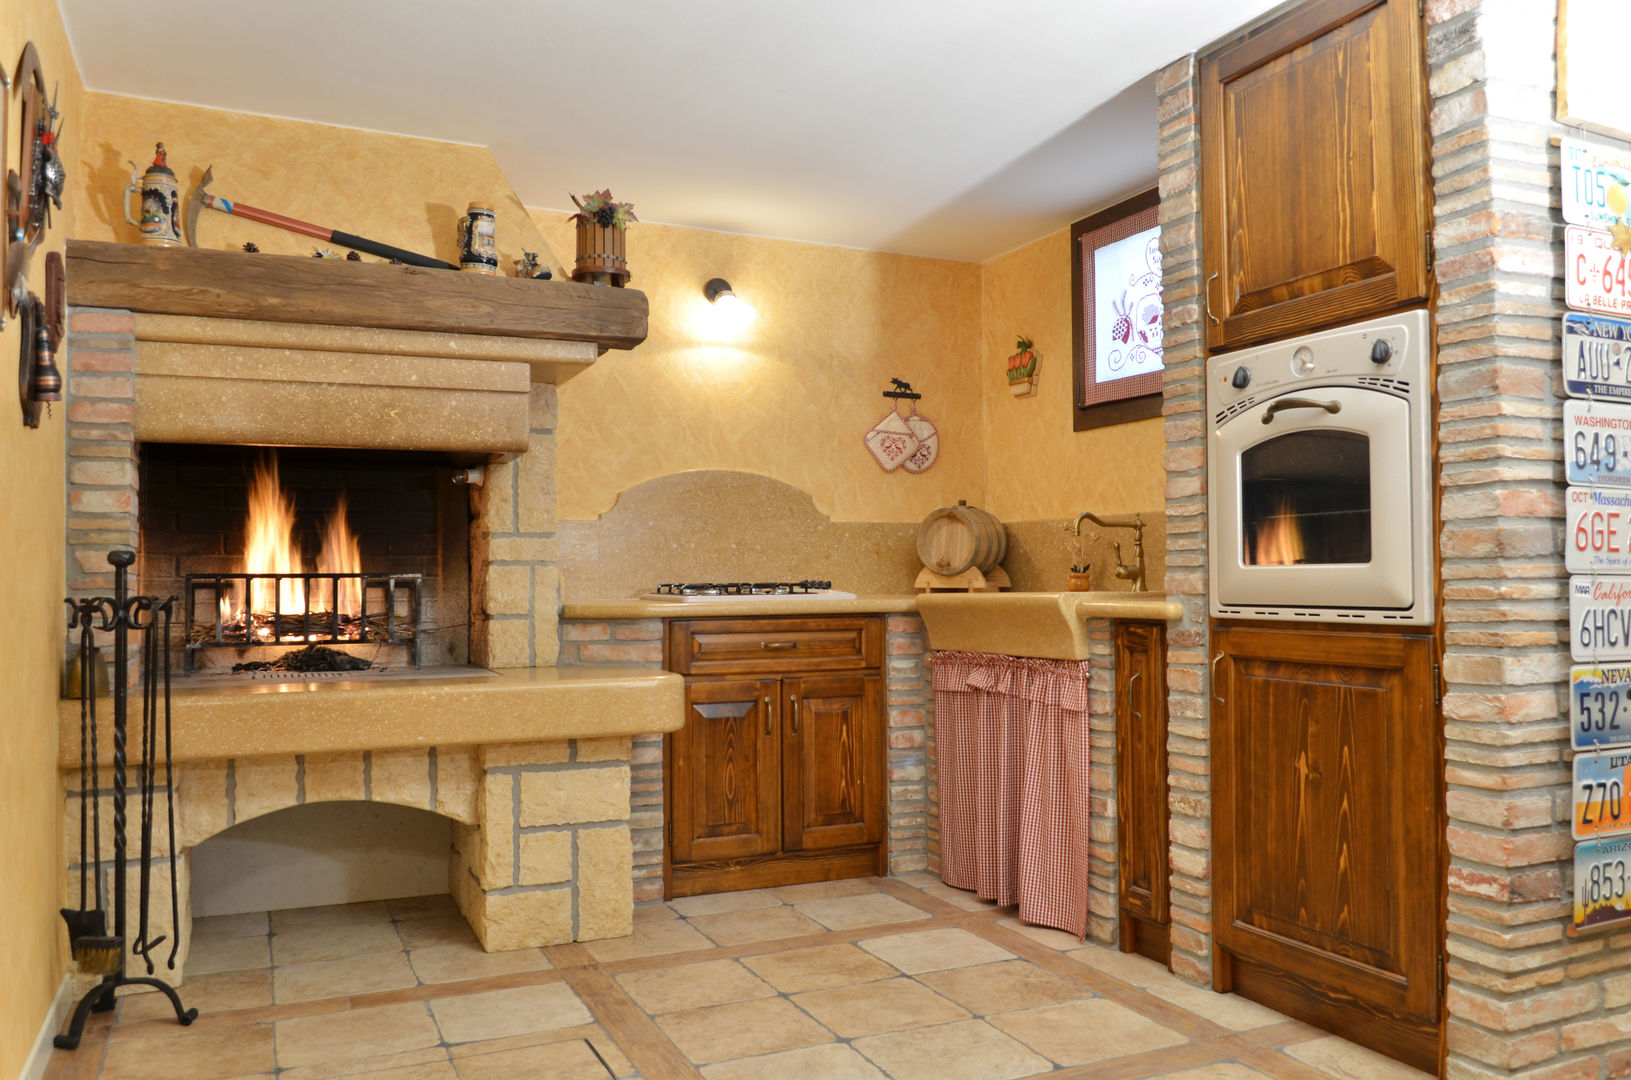 NOSTRE REALIZZAZIONI - cucine in muratura/taverne, SALM Caminetti SALM Caminetti Rustic style kitchen Marble